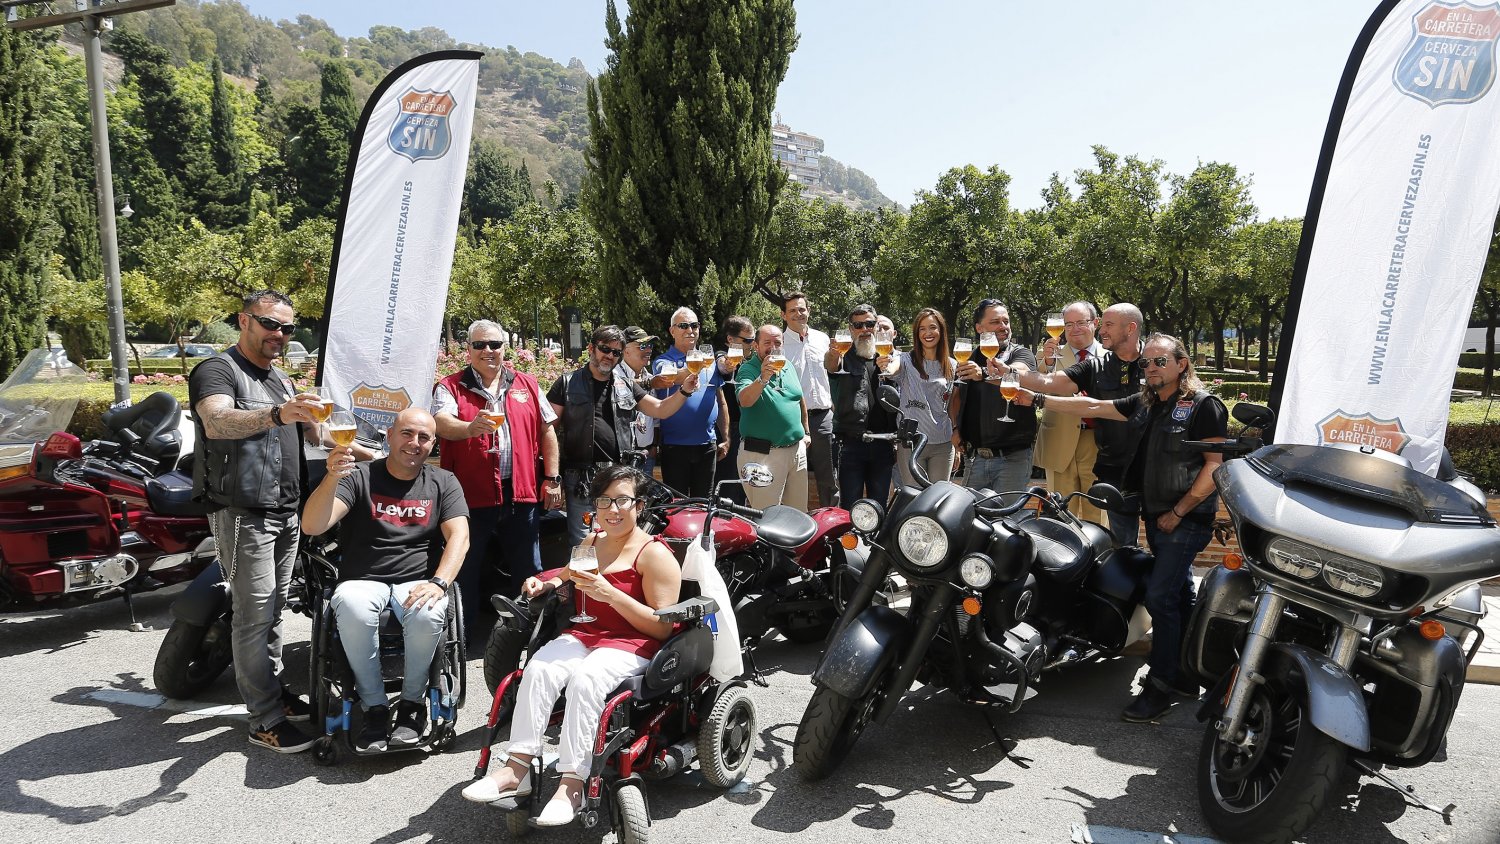 Los embajadores de ‘En la carretera, cerveza SIN’ llegan a Málaga para concienciar sobre la incompatibilidad de alcohol y conducción